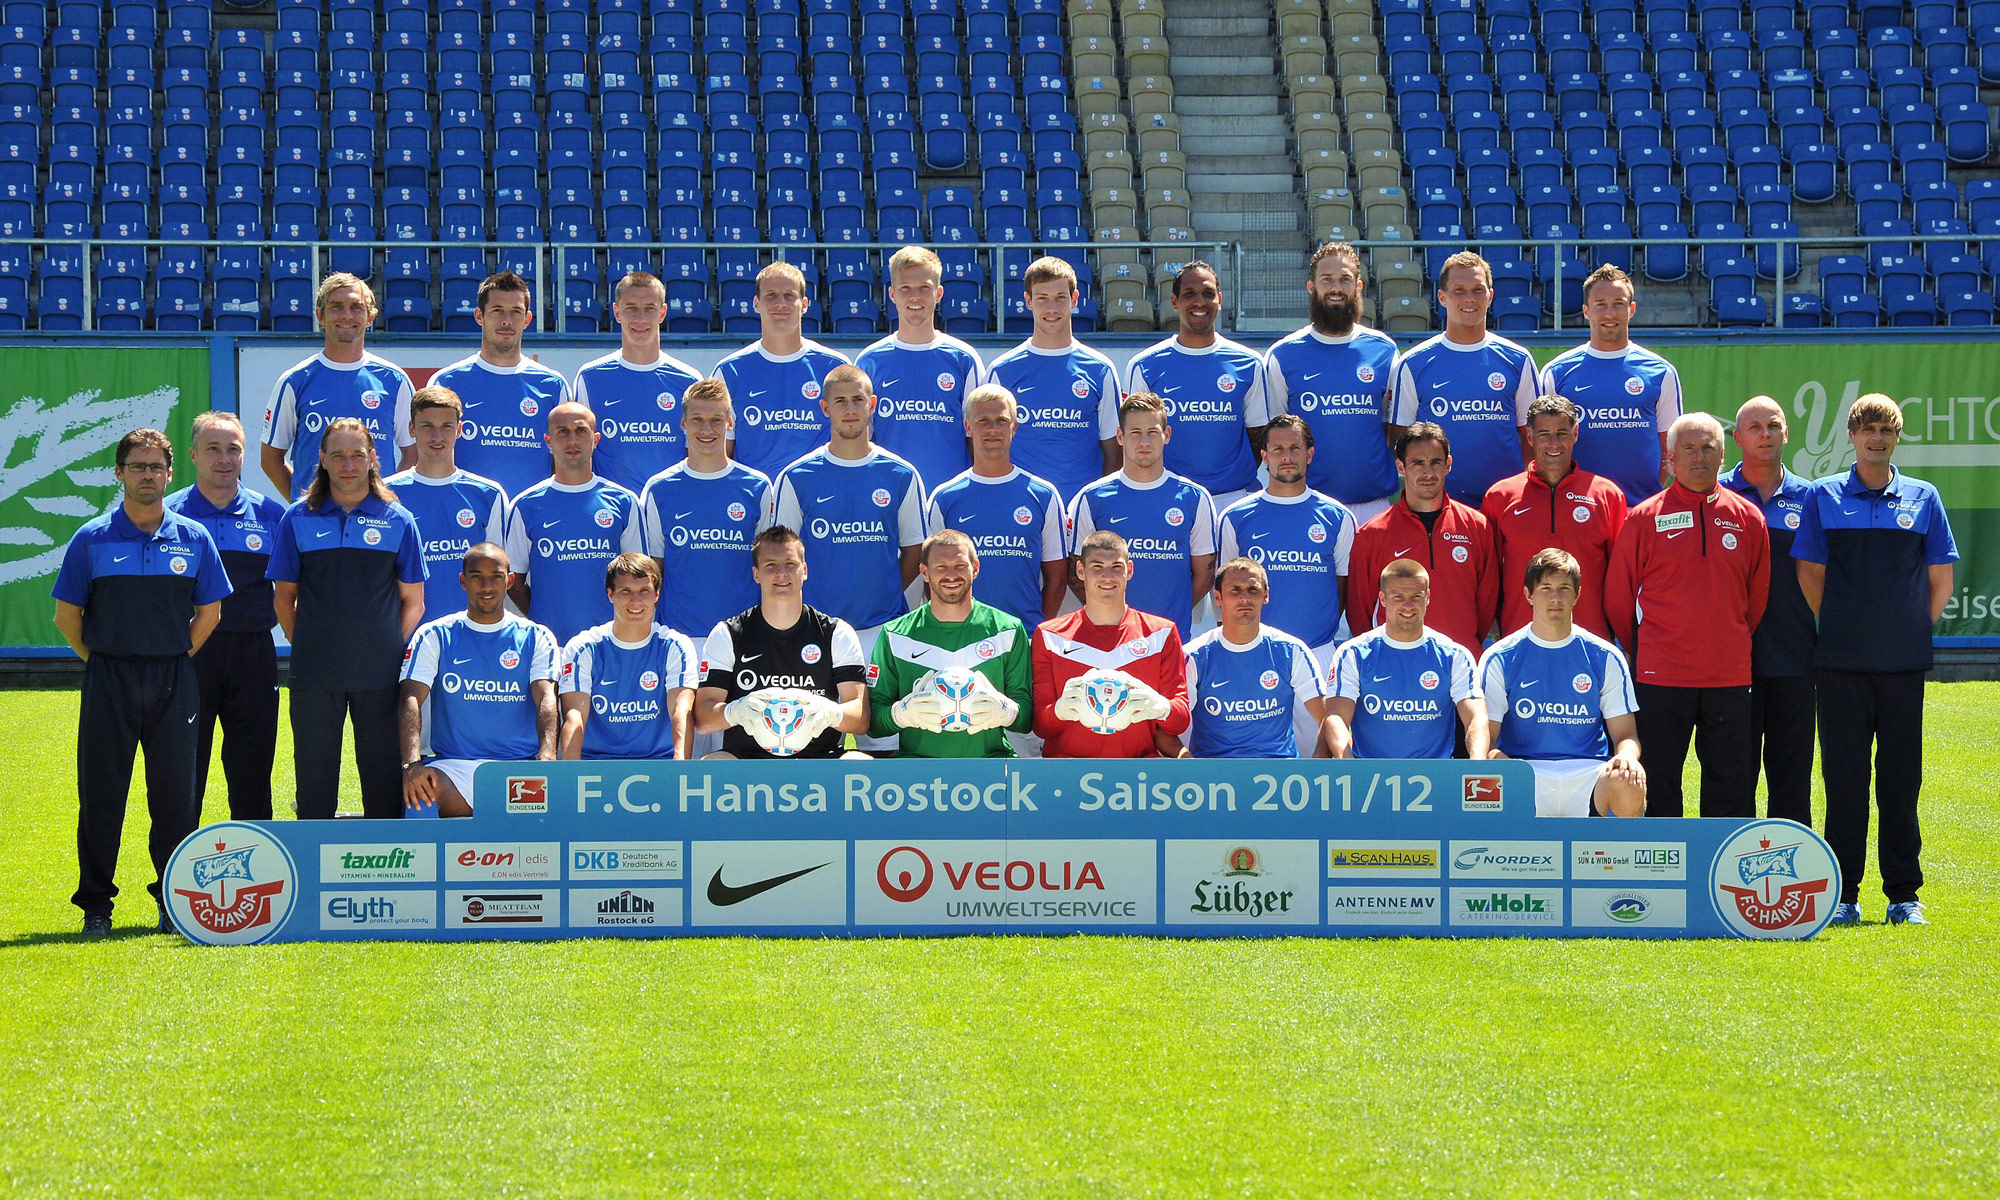 Mannschaftsfoto des FC Hansa Rostock 2011/2012